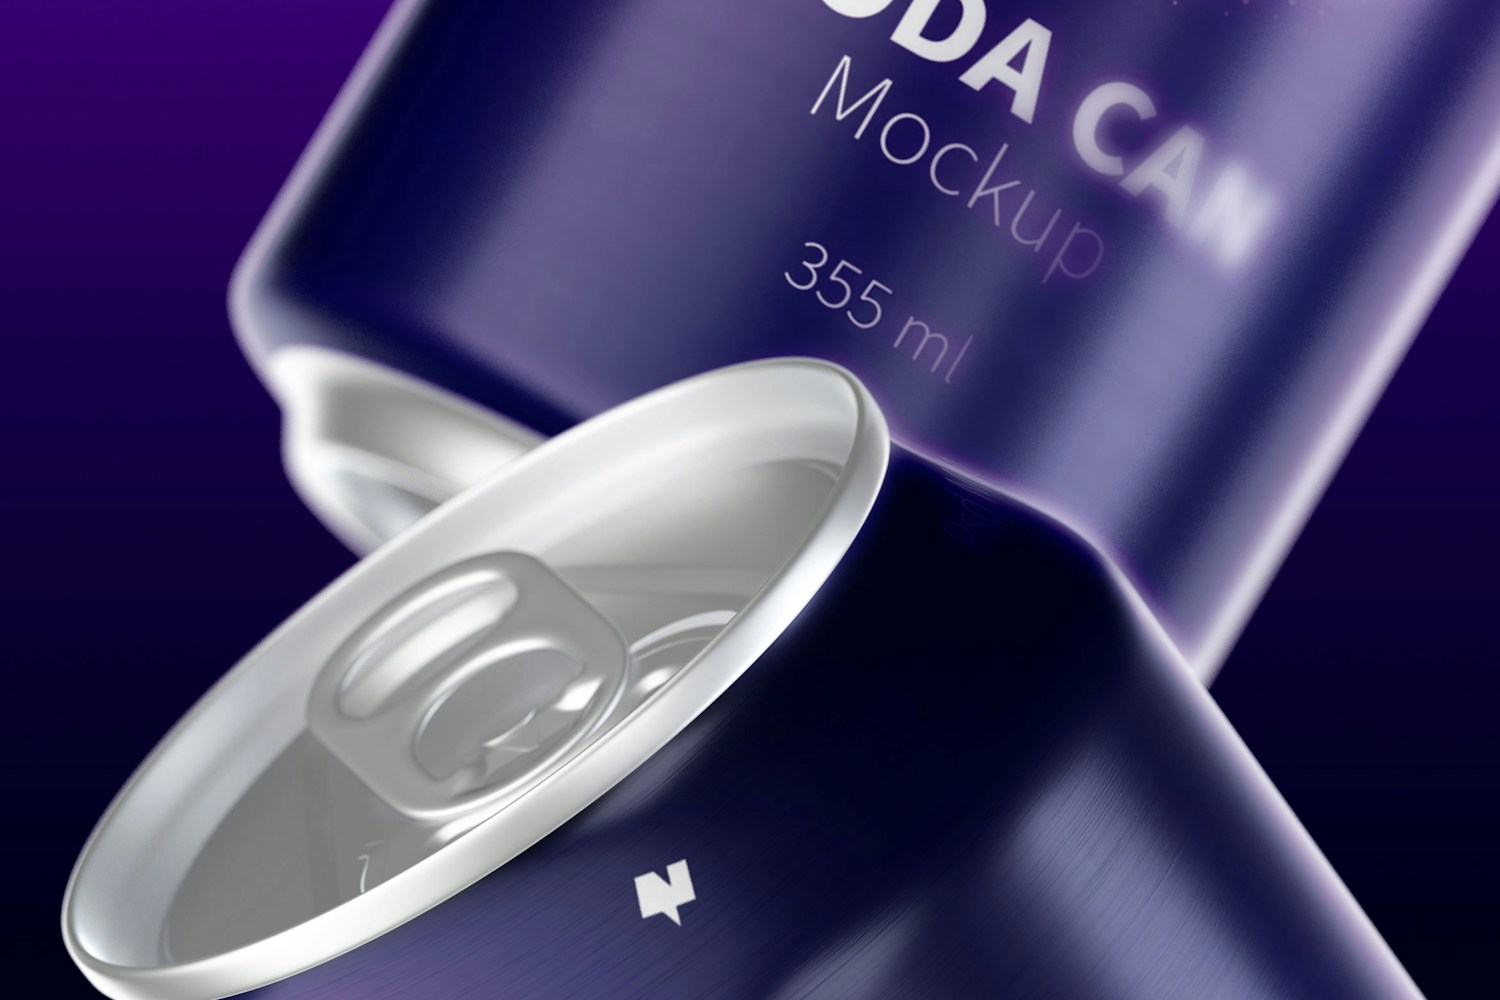 355 ml Soda Cans Mockup, Close-Up